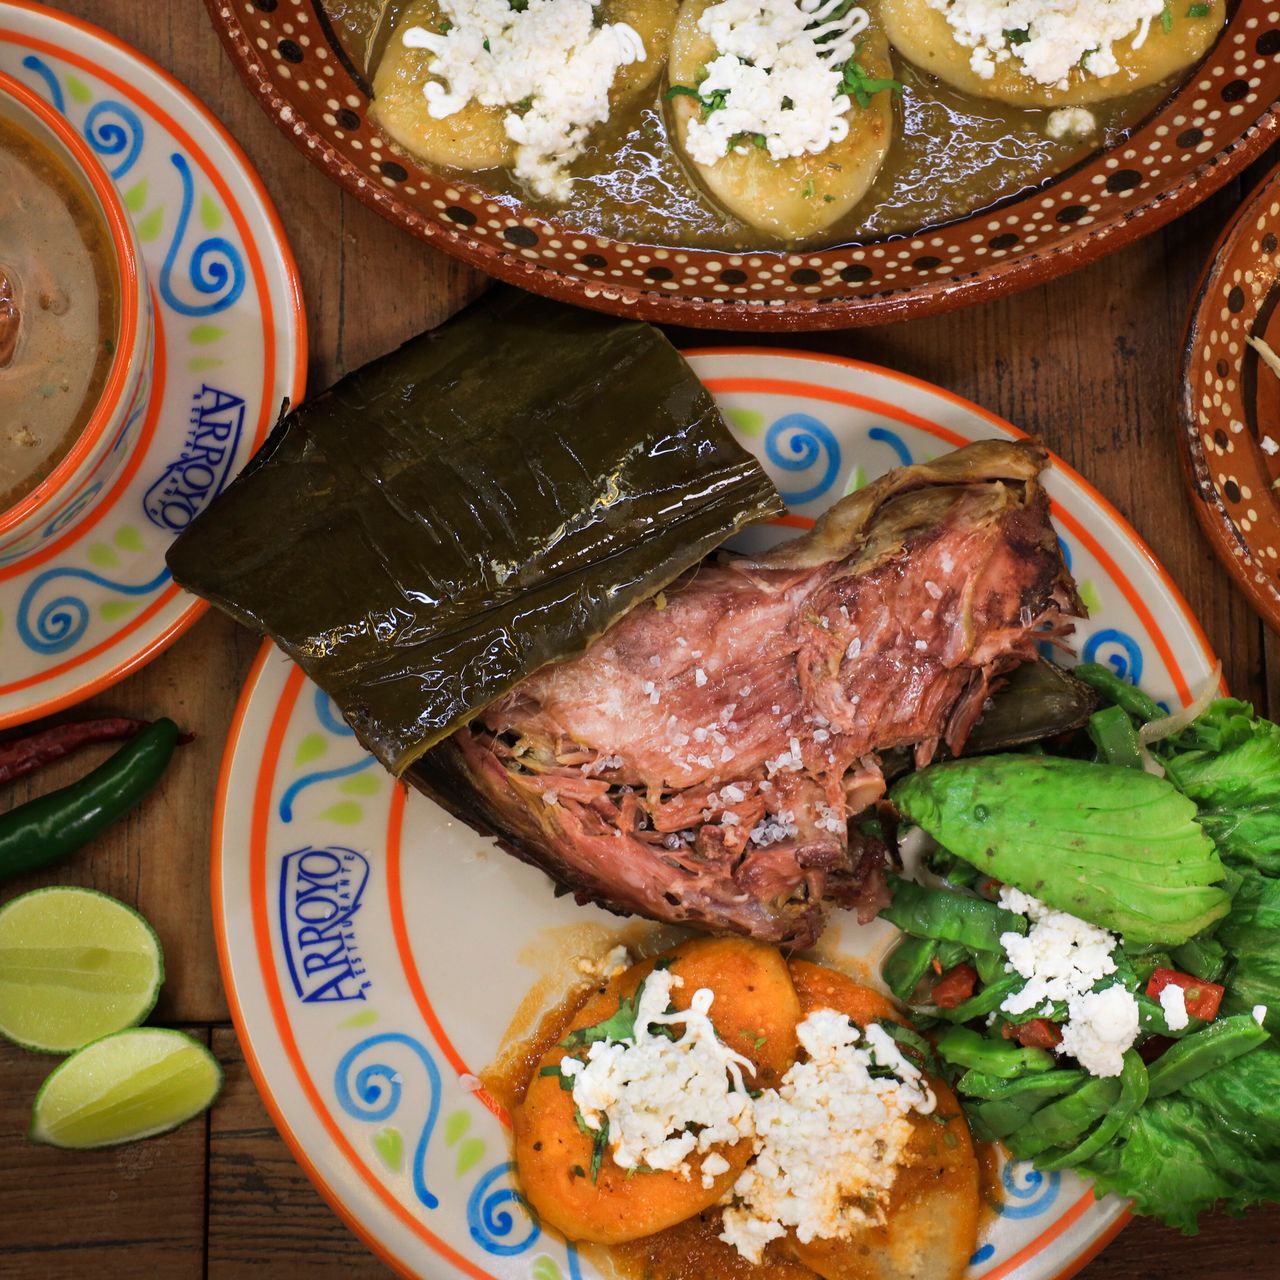 Arroyo Restaurante - Ciudad de México, CDMX | OpenTable